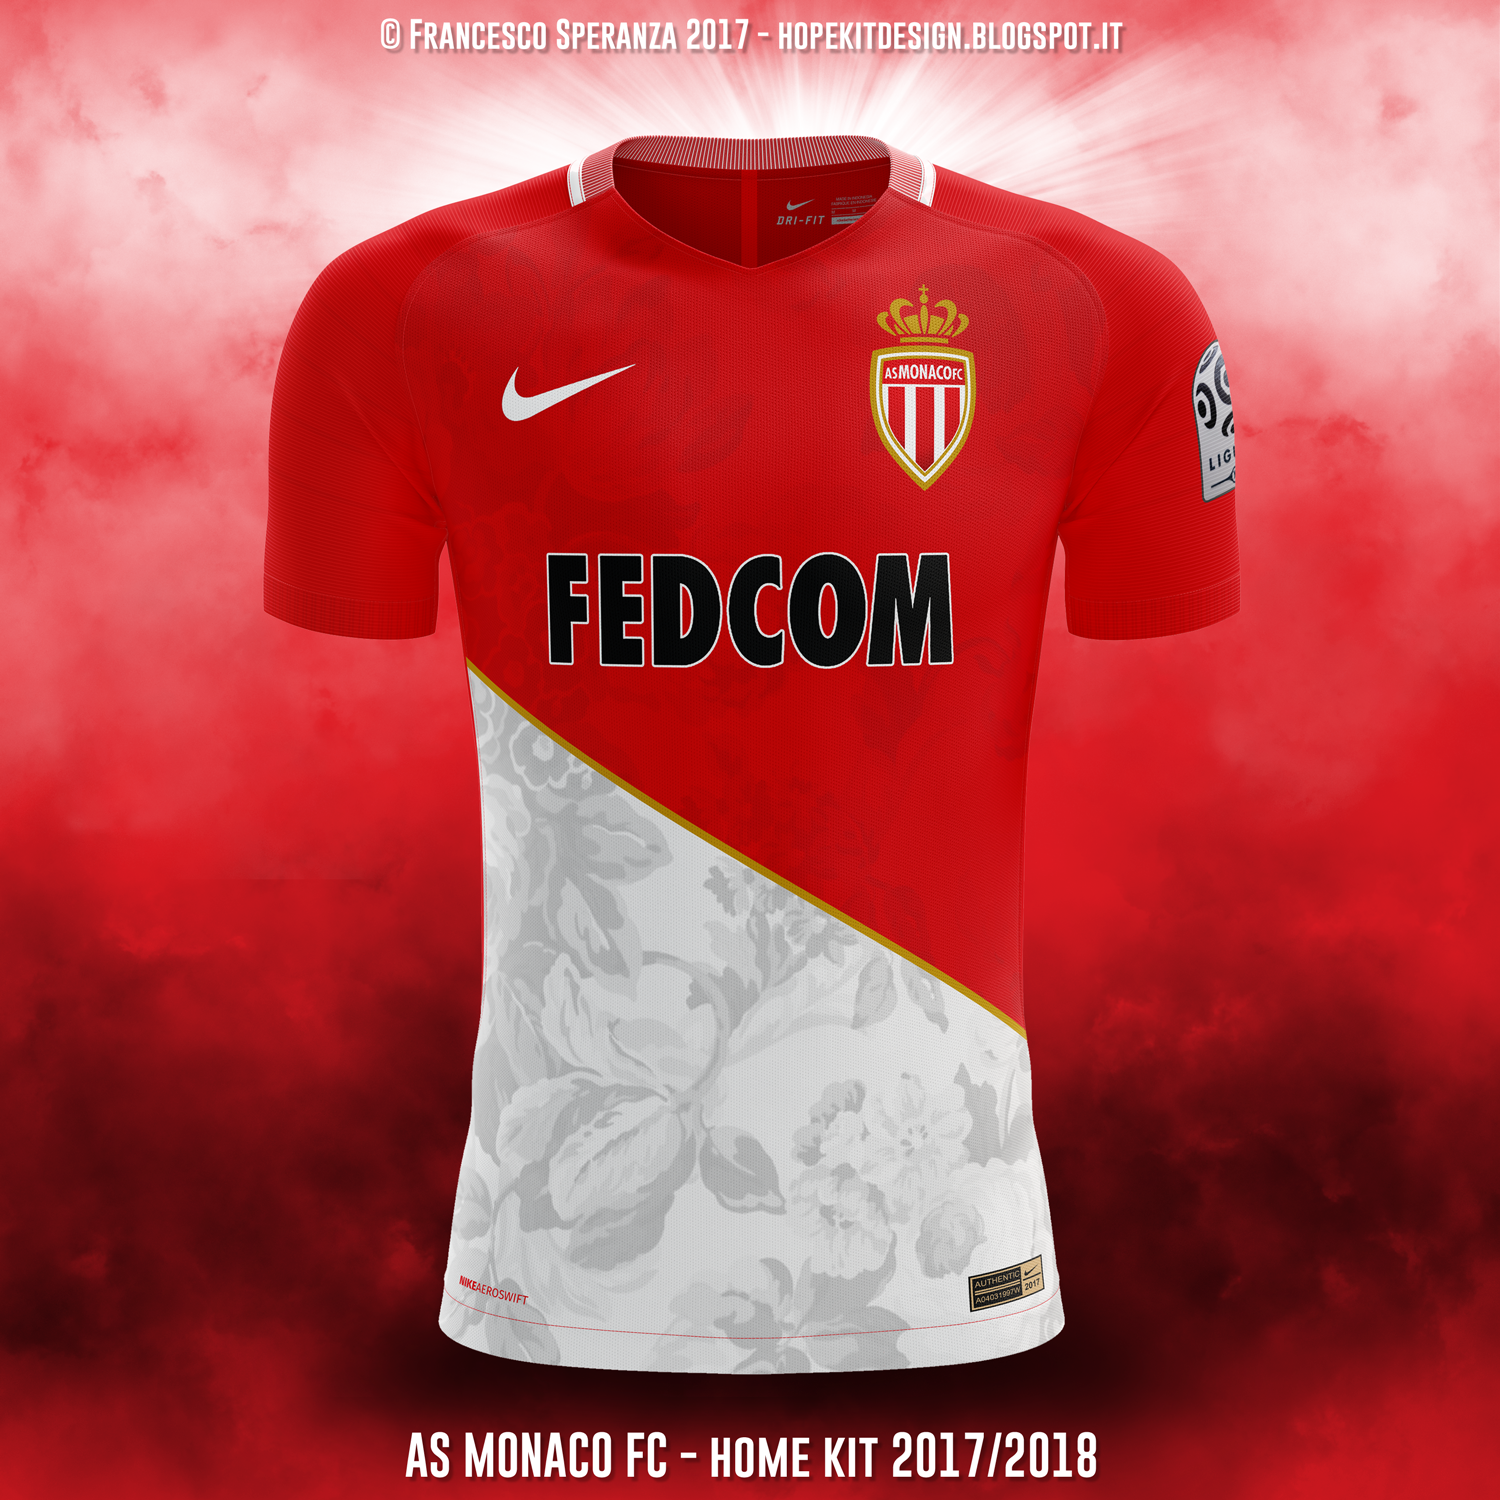 AS Monaco FC - home